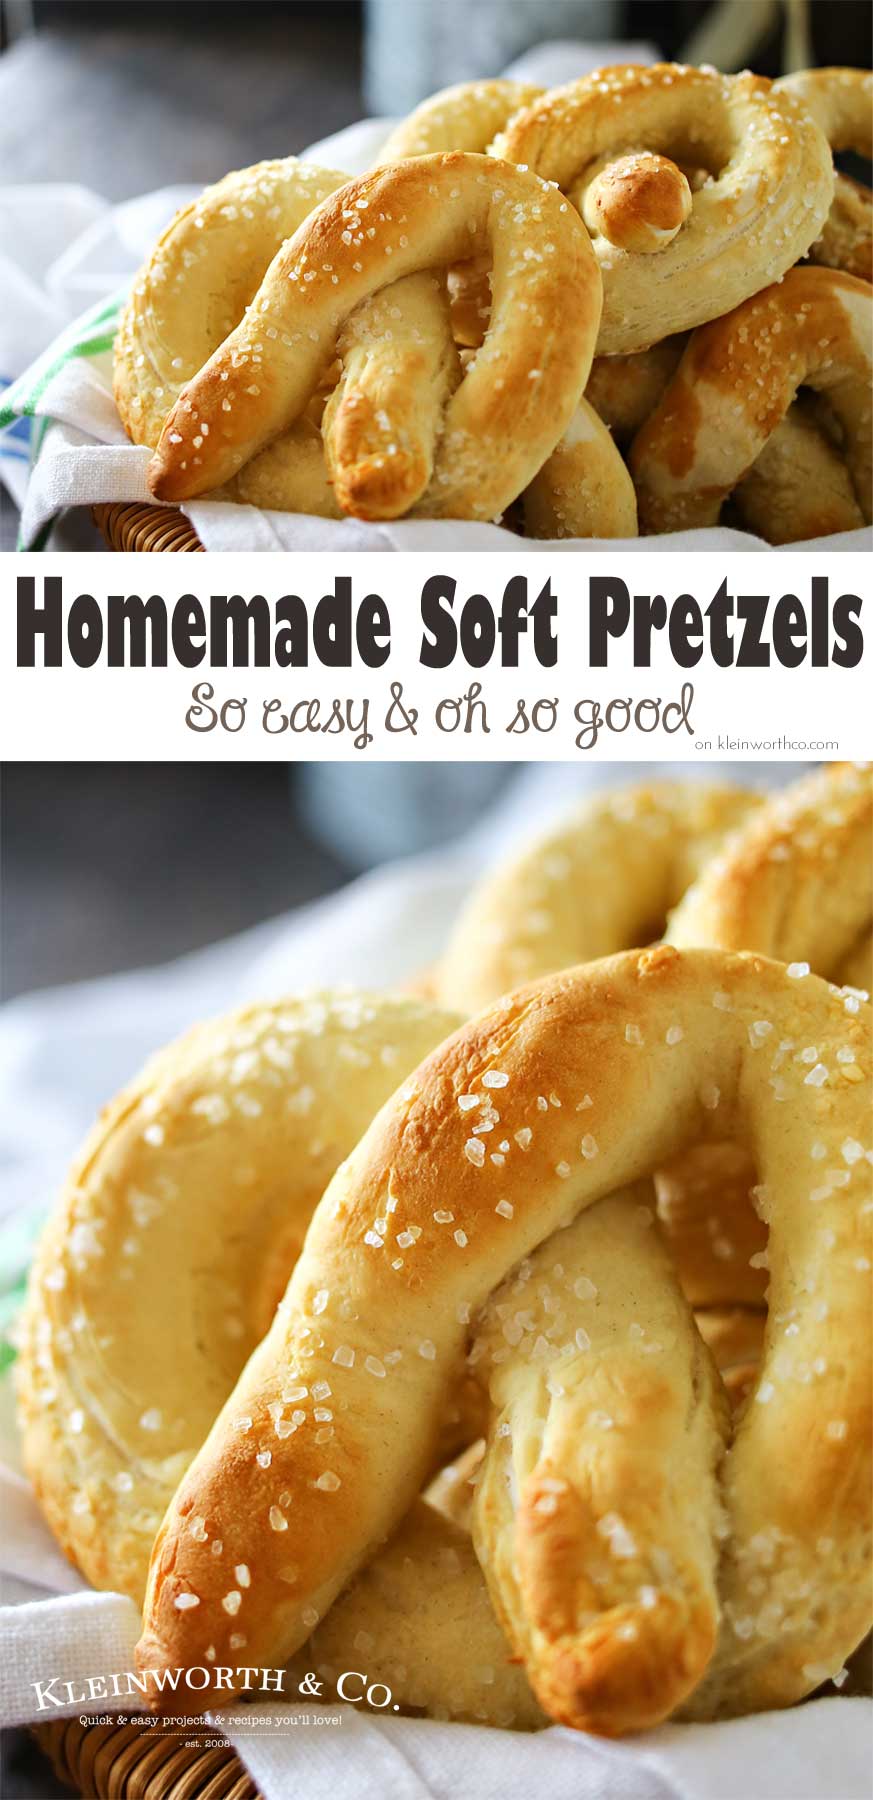 How to Make Homemade Pretzels